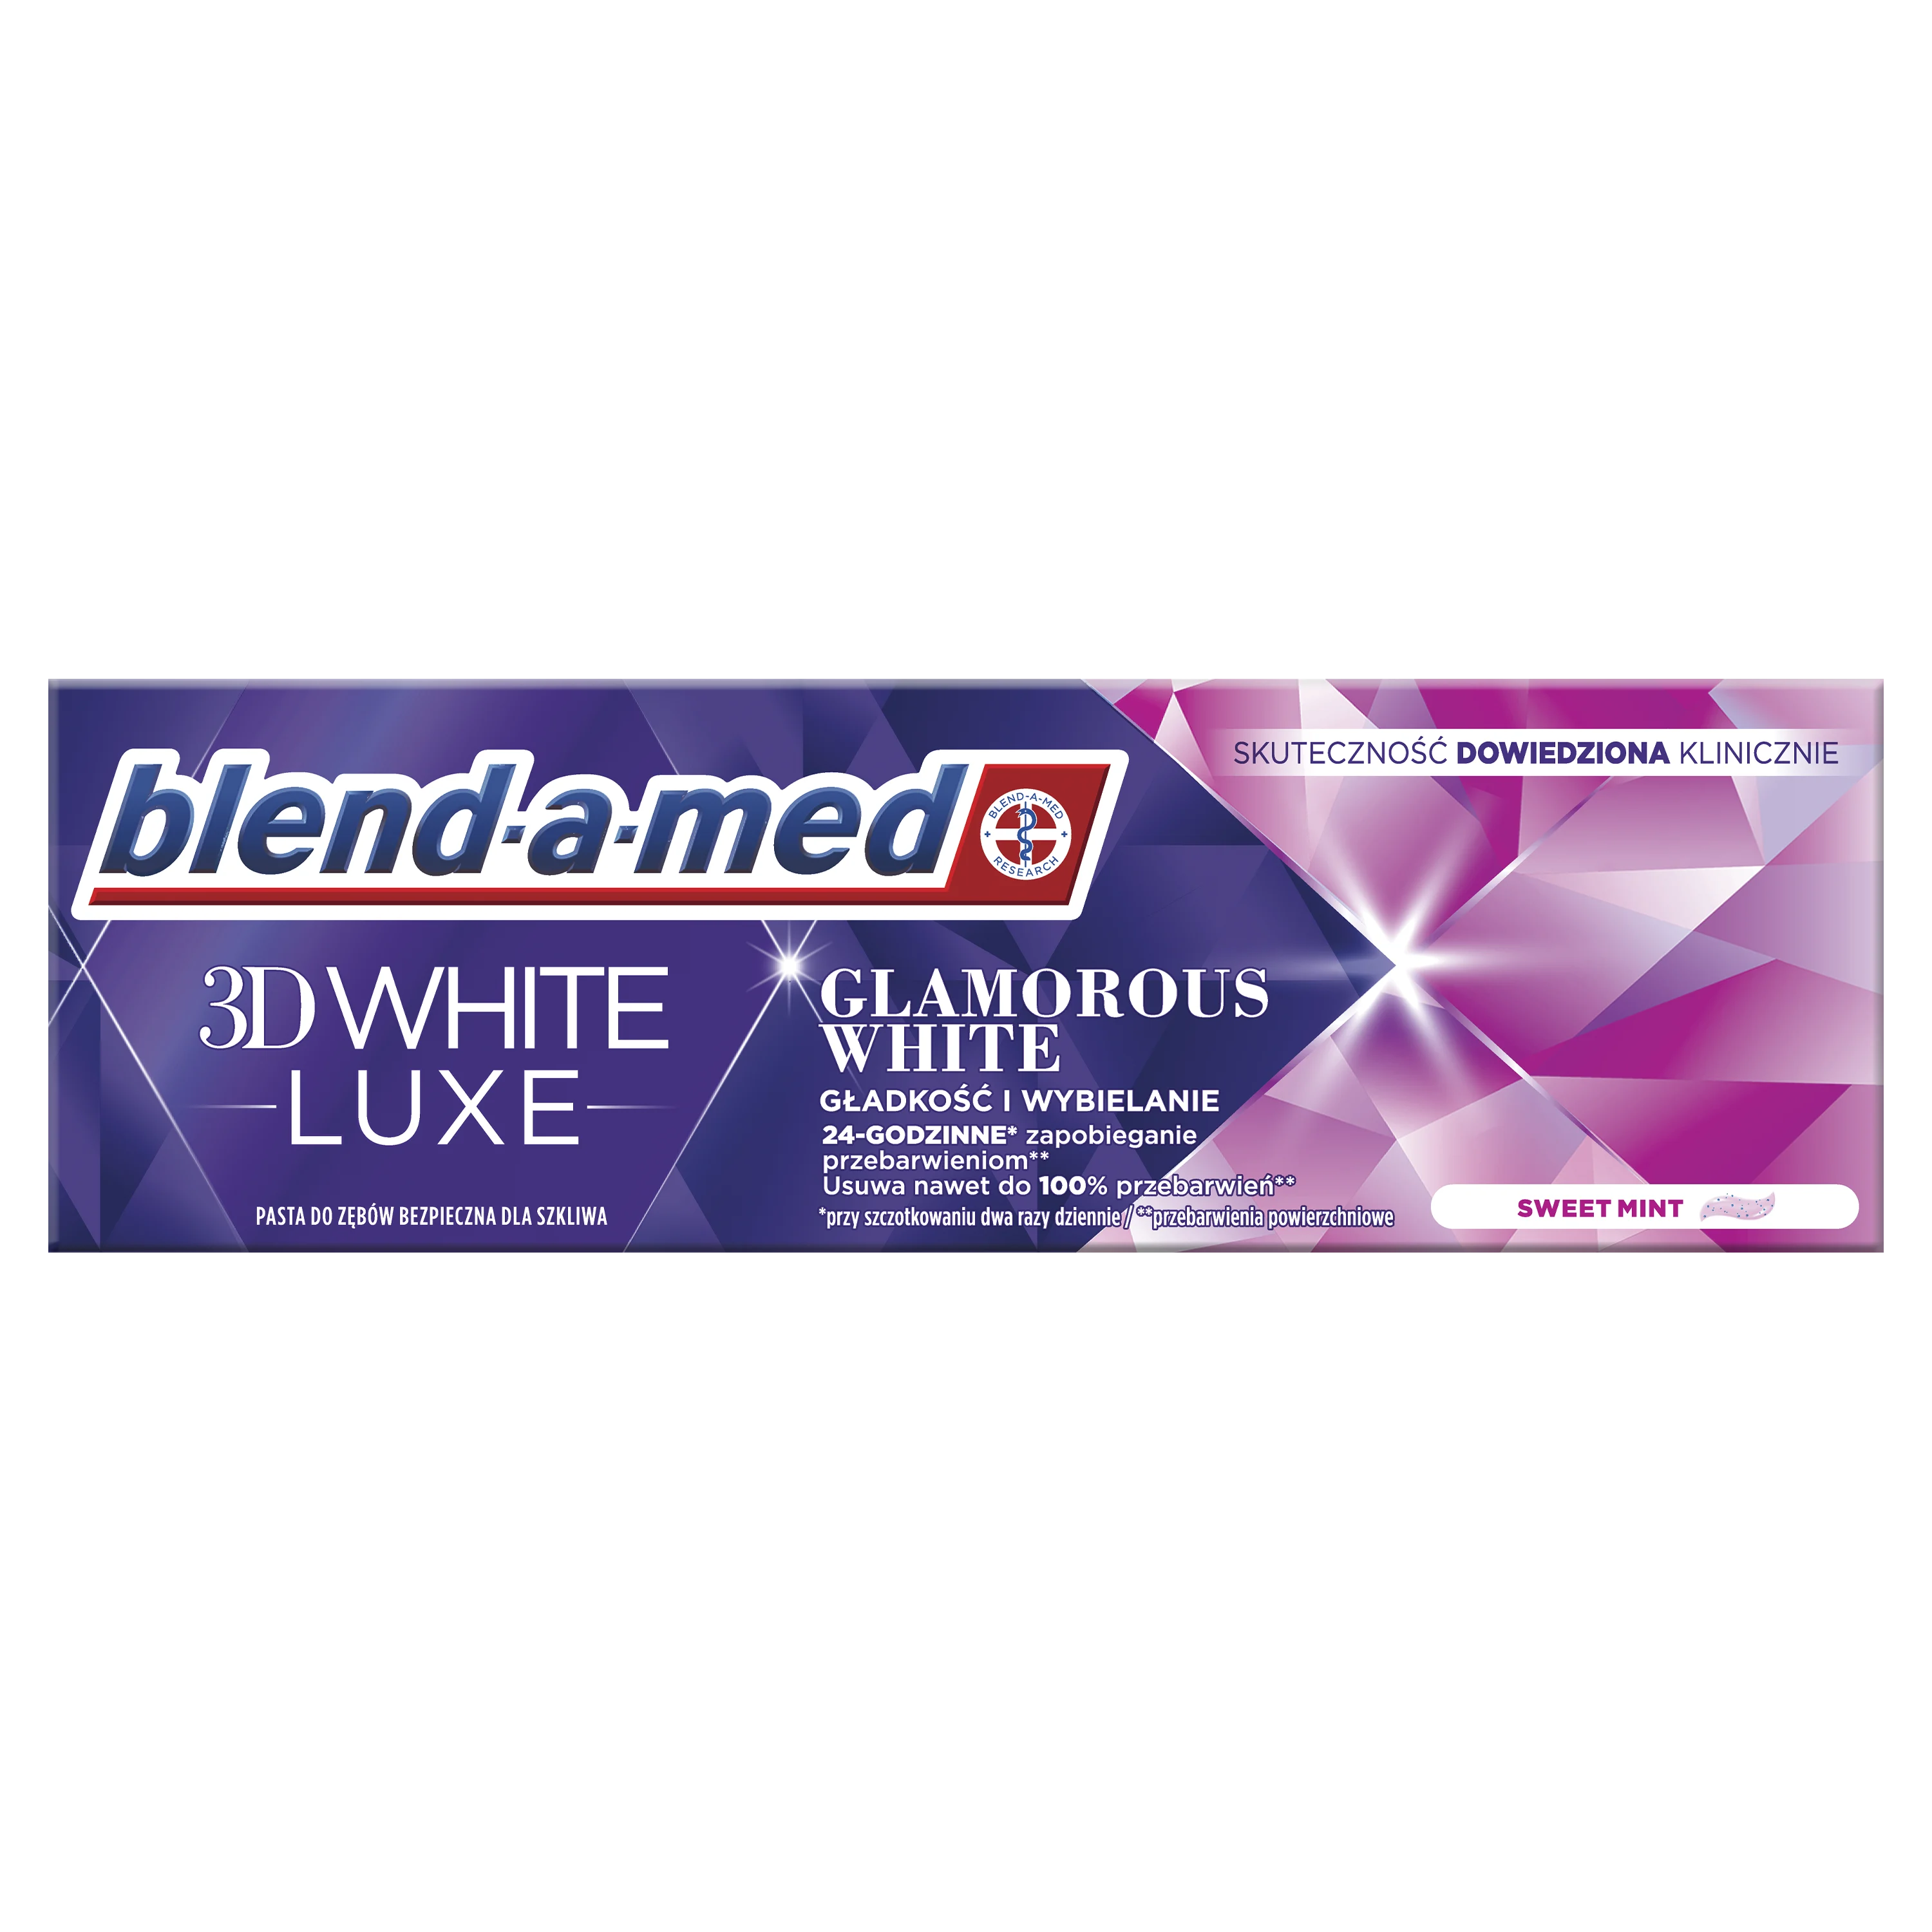 Blend-A-Med 3D White Luxe, Glamorous White, Pasta Do Zebow 